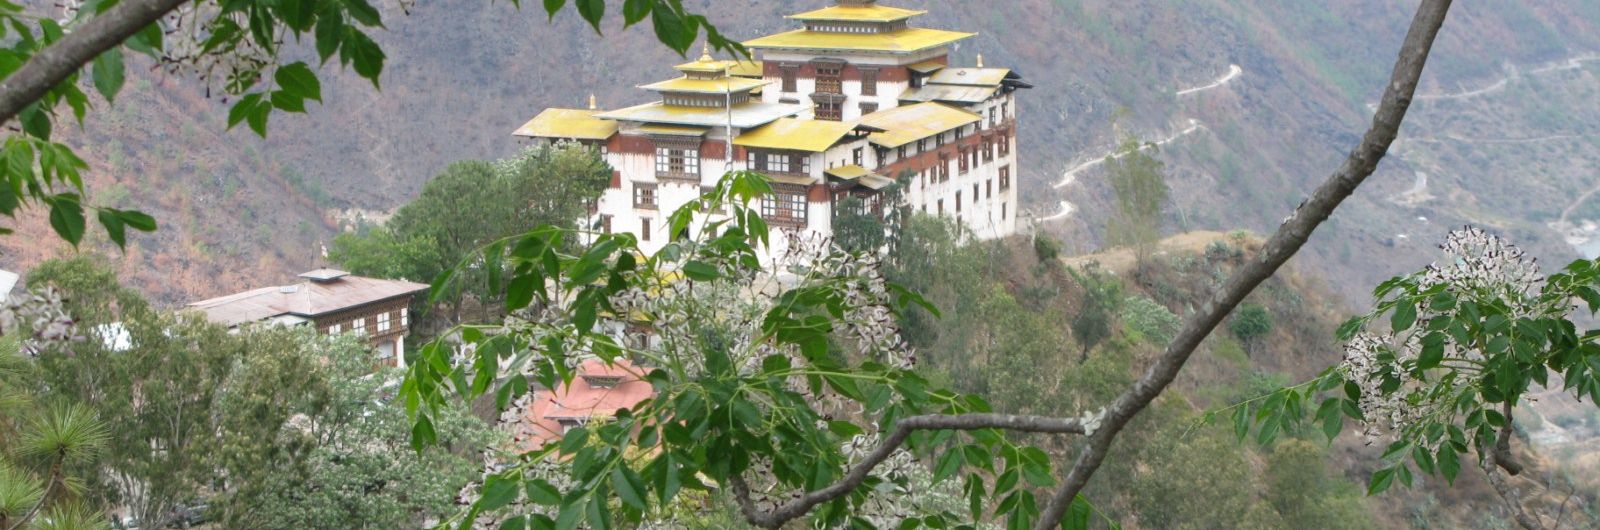 Darjeeling - Sikkim - Bhutan